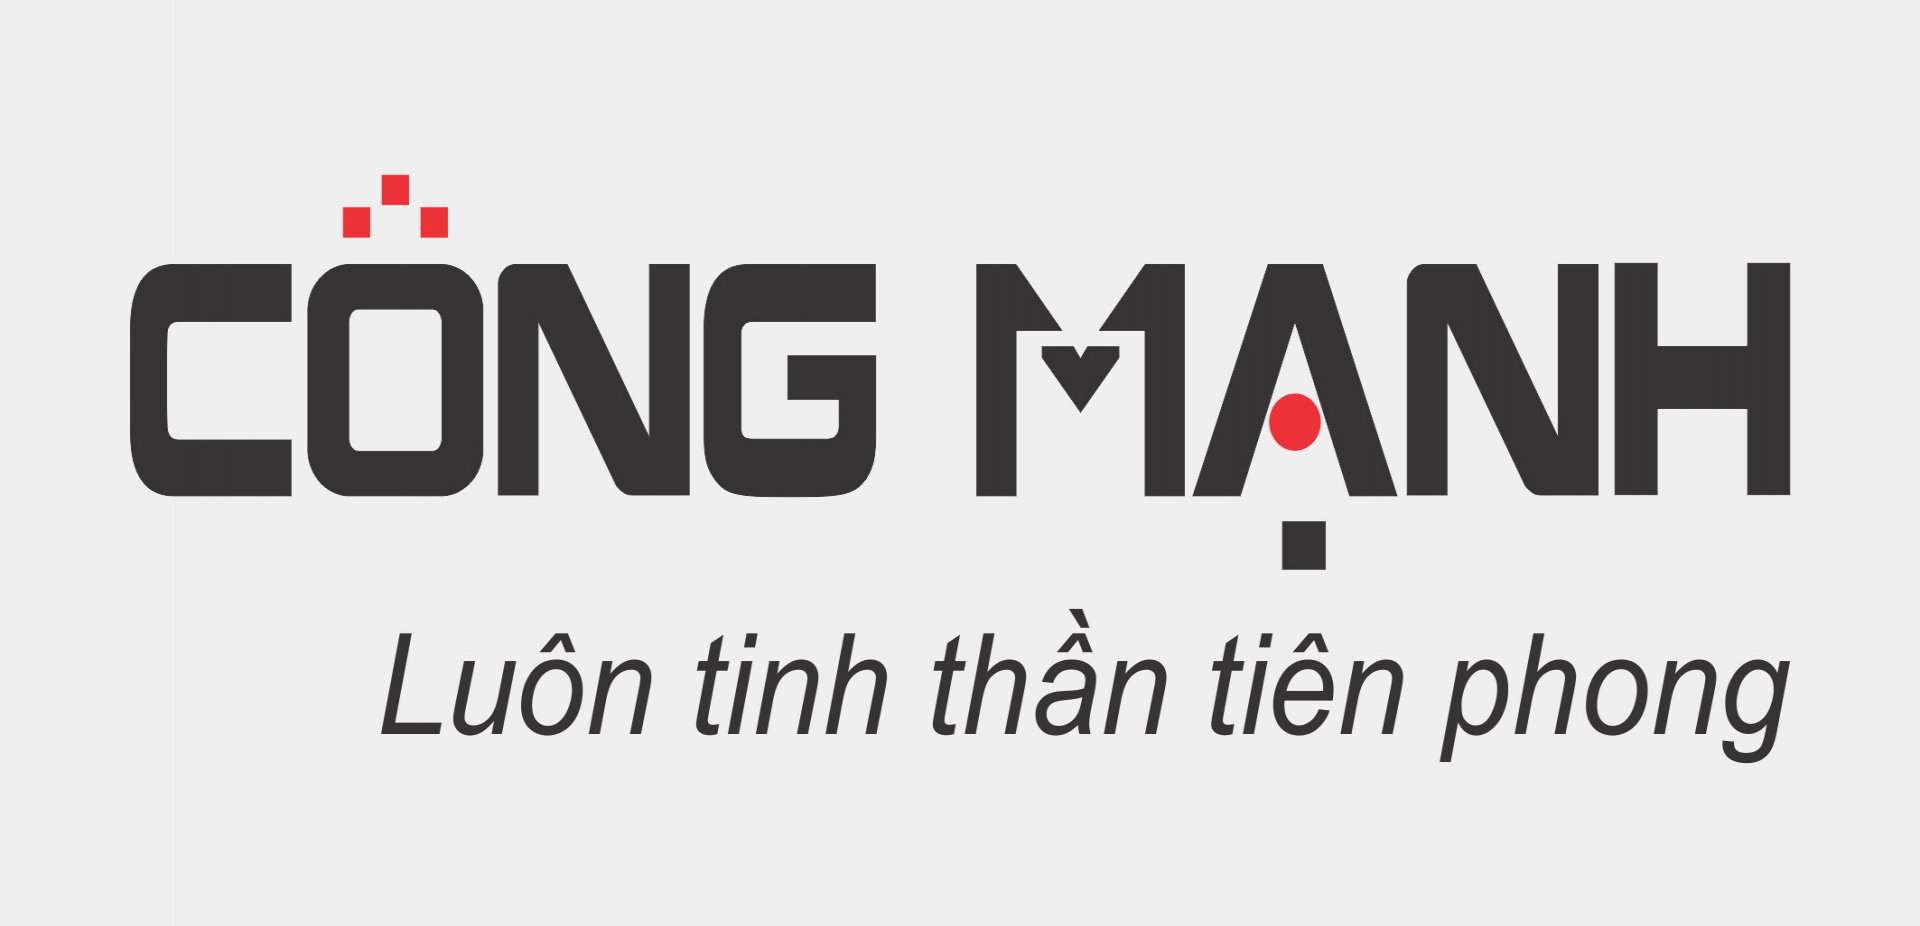 Thi-cong-showroom-cong-manh